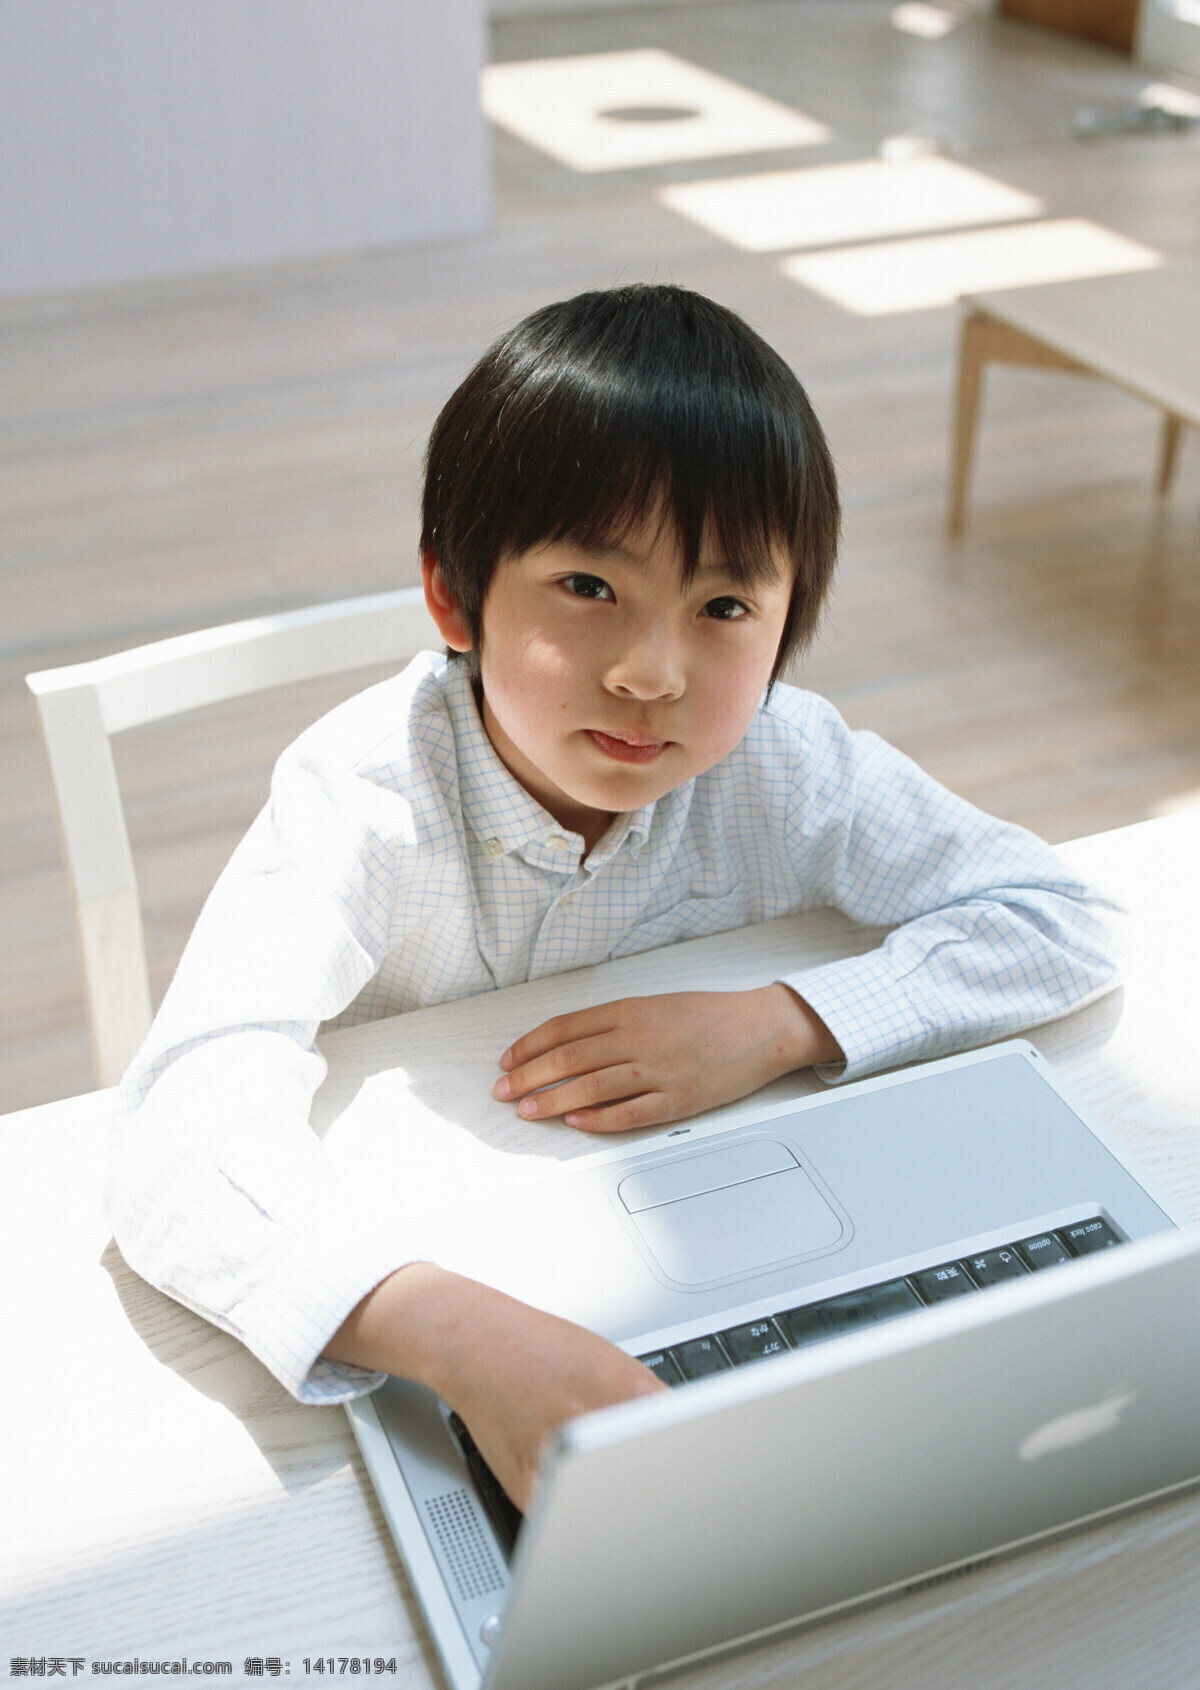 玩电脑 小 男孩 儿童 可爱 小男孩 学习 电脑 抬头 仰望 生活人物 人物图片